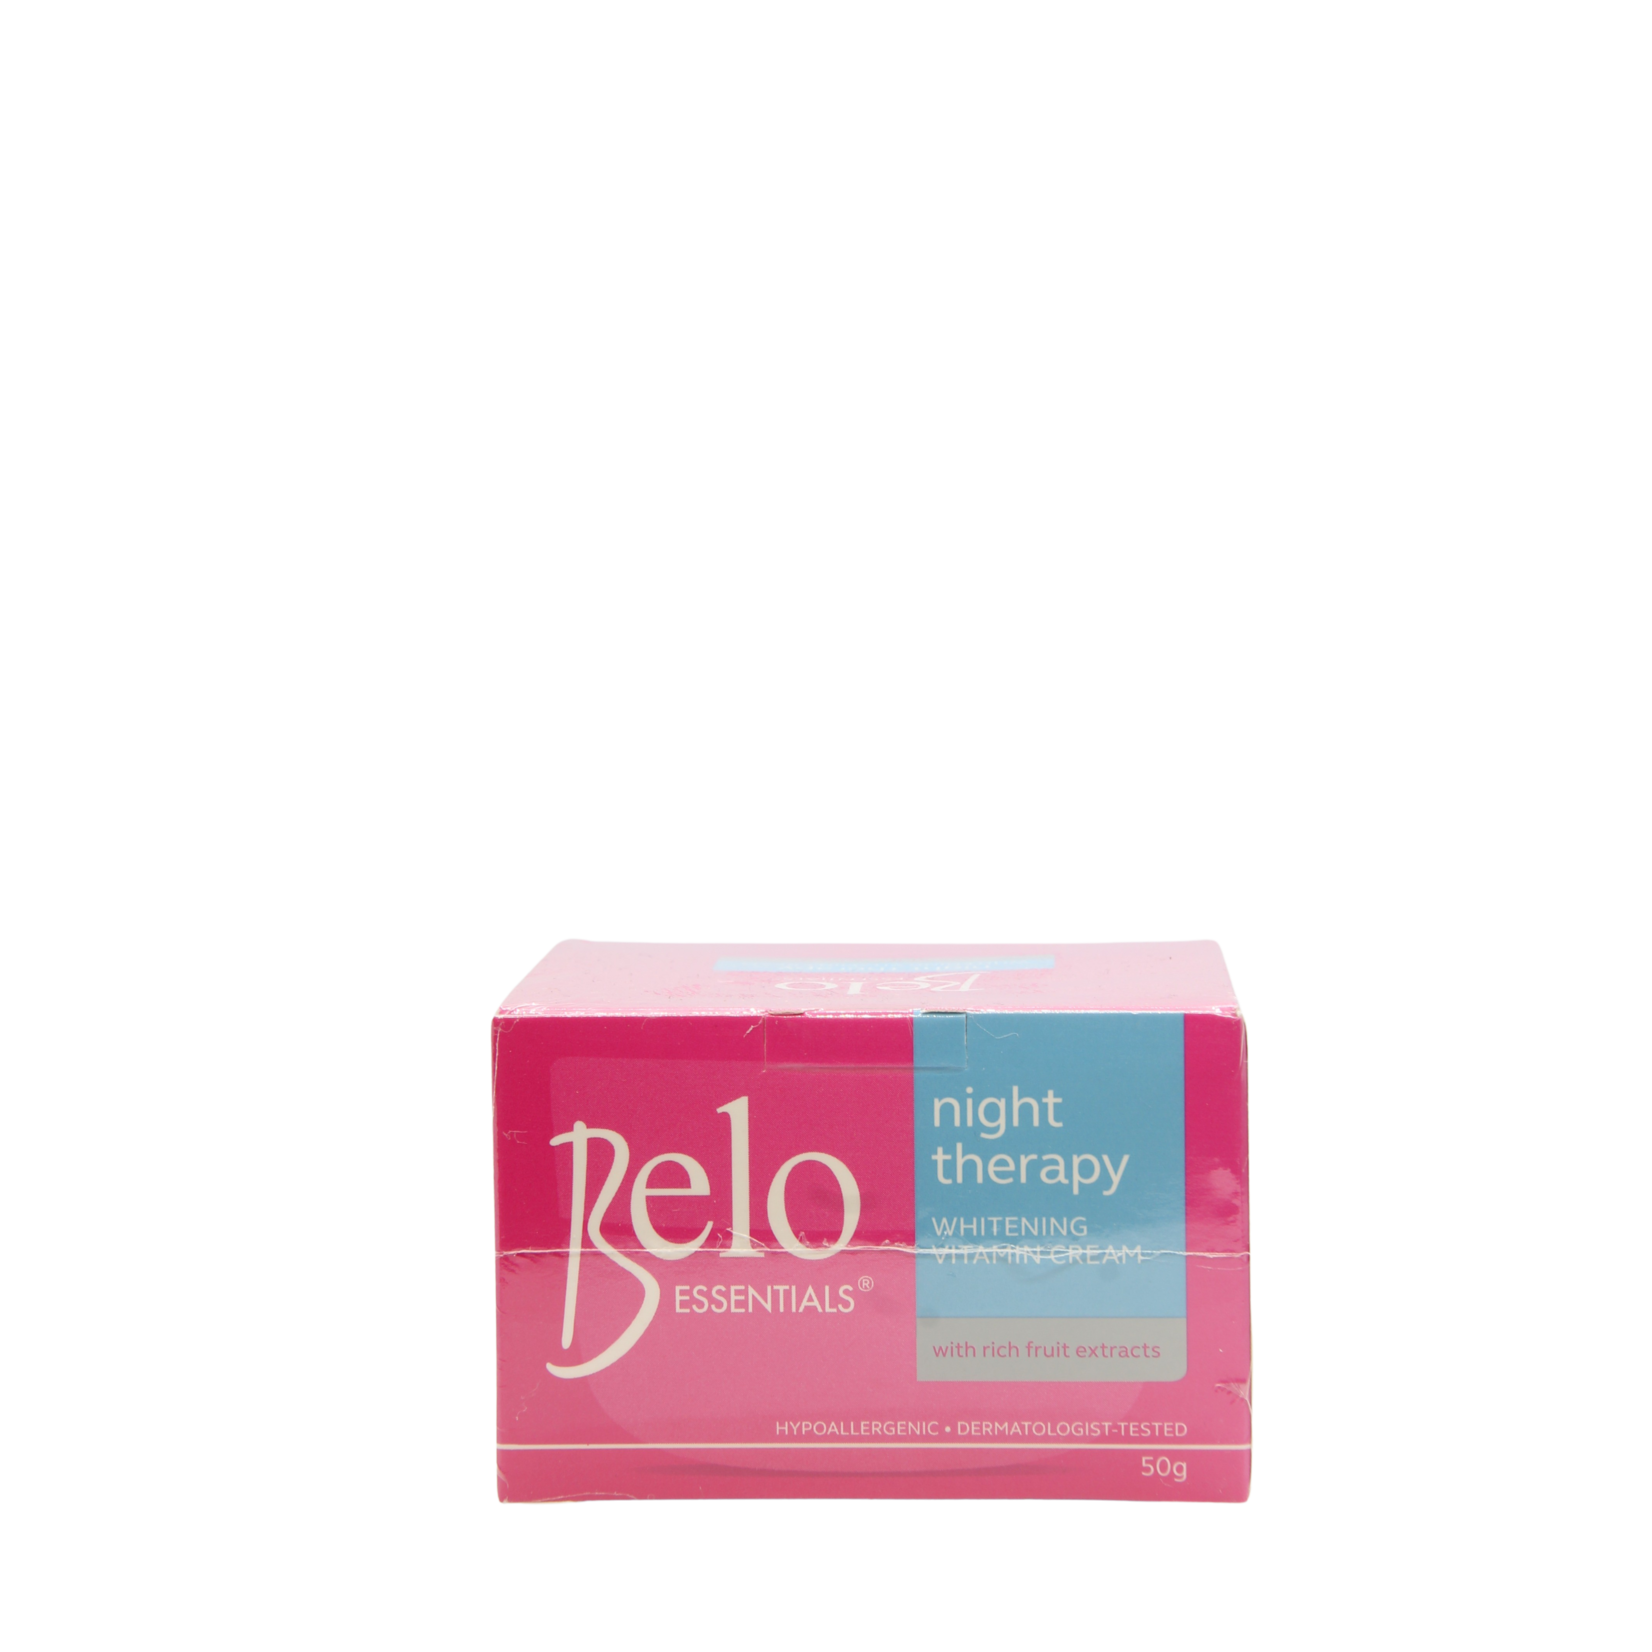 Belo, Vakkundig samengesteld om jouw unieke schoonheid te laten zien! Belo day and night advantage package 4 pieces